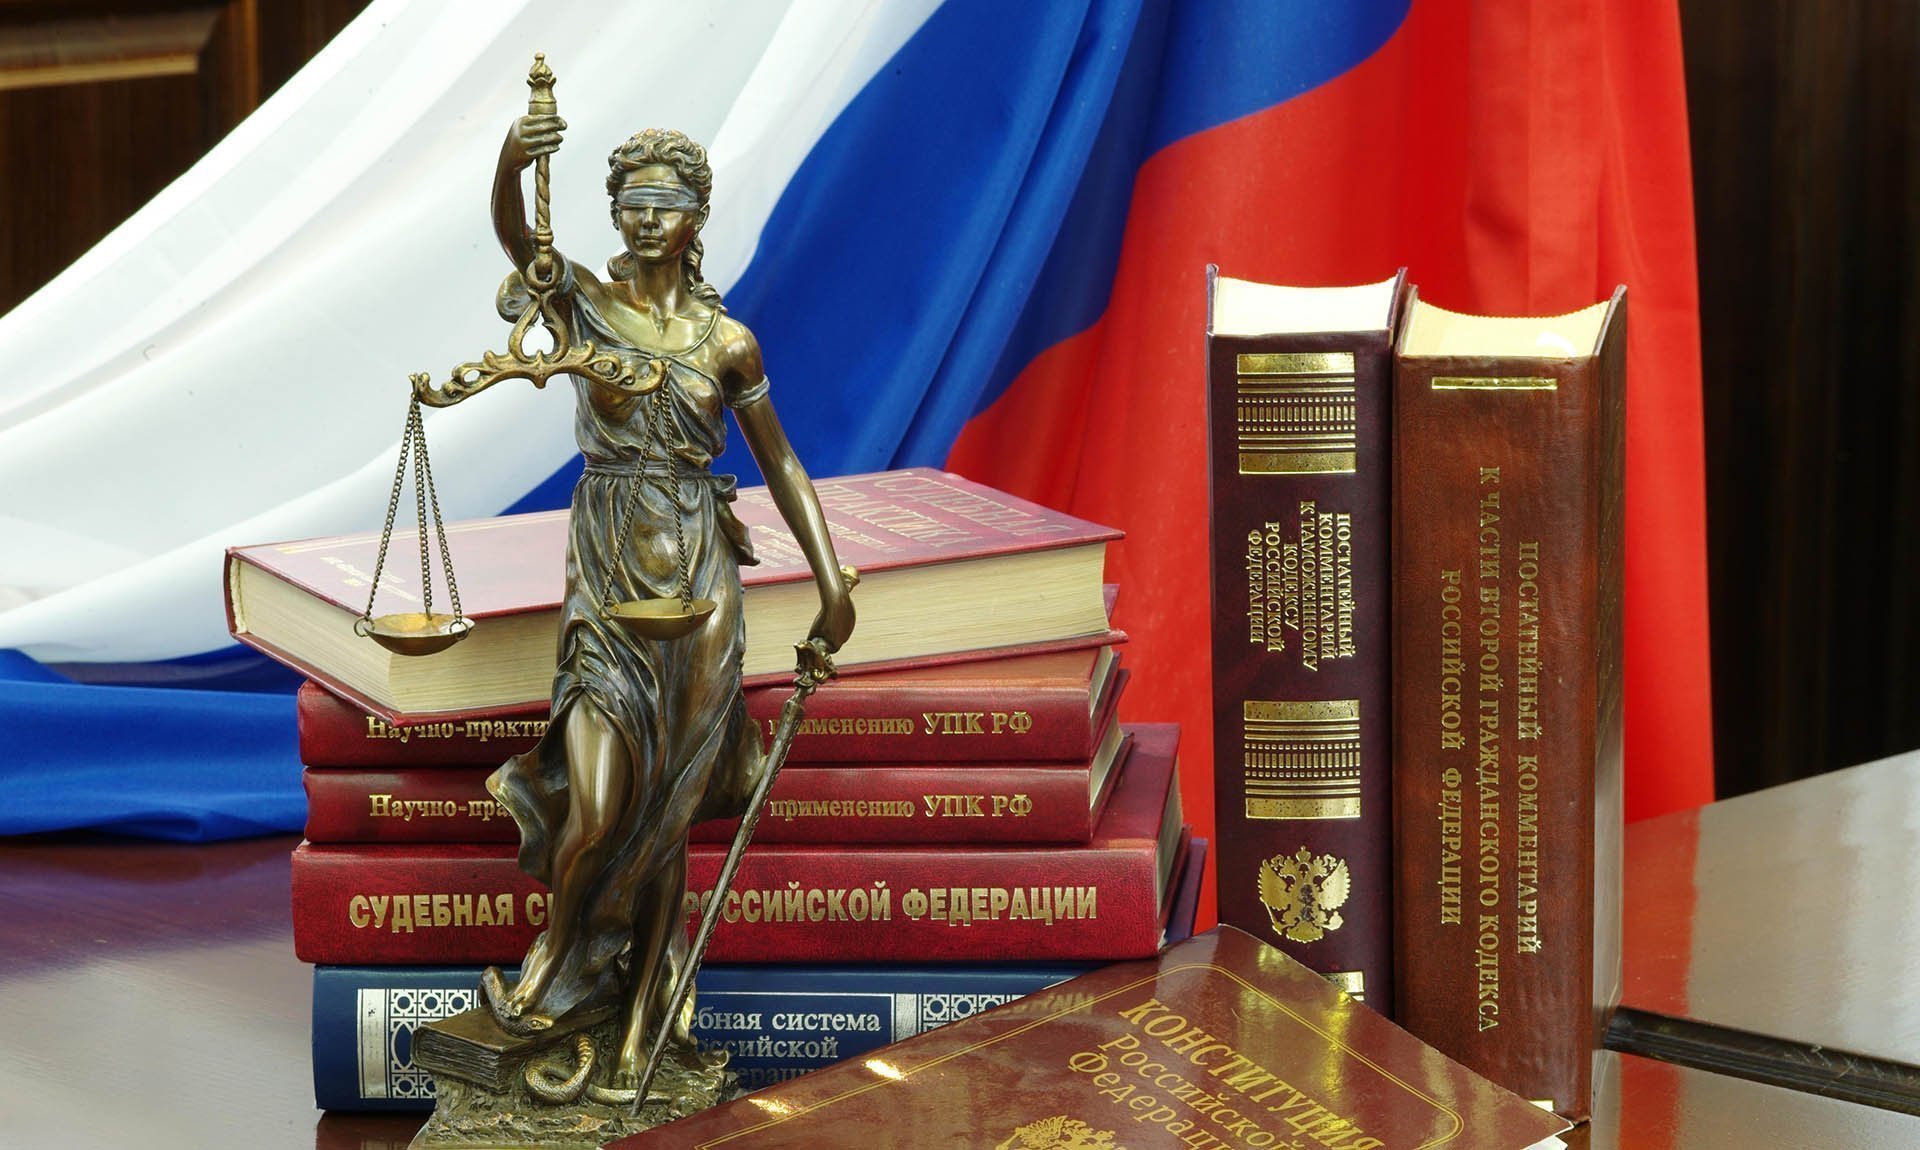 Статуя Фемиды и юридическая литература на столе в зале судебных заседаний